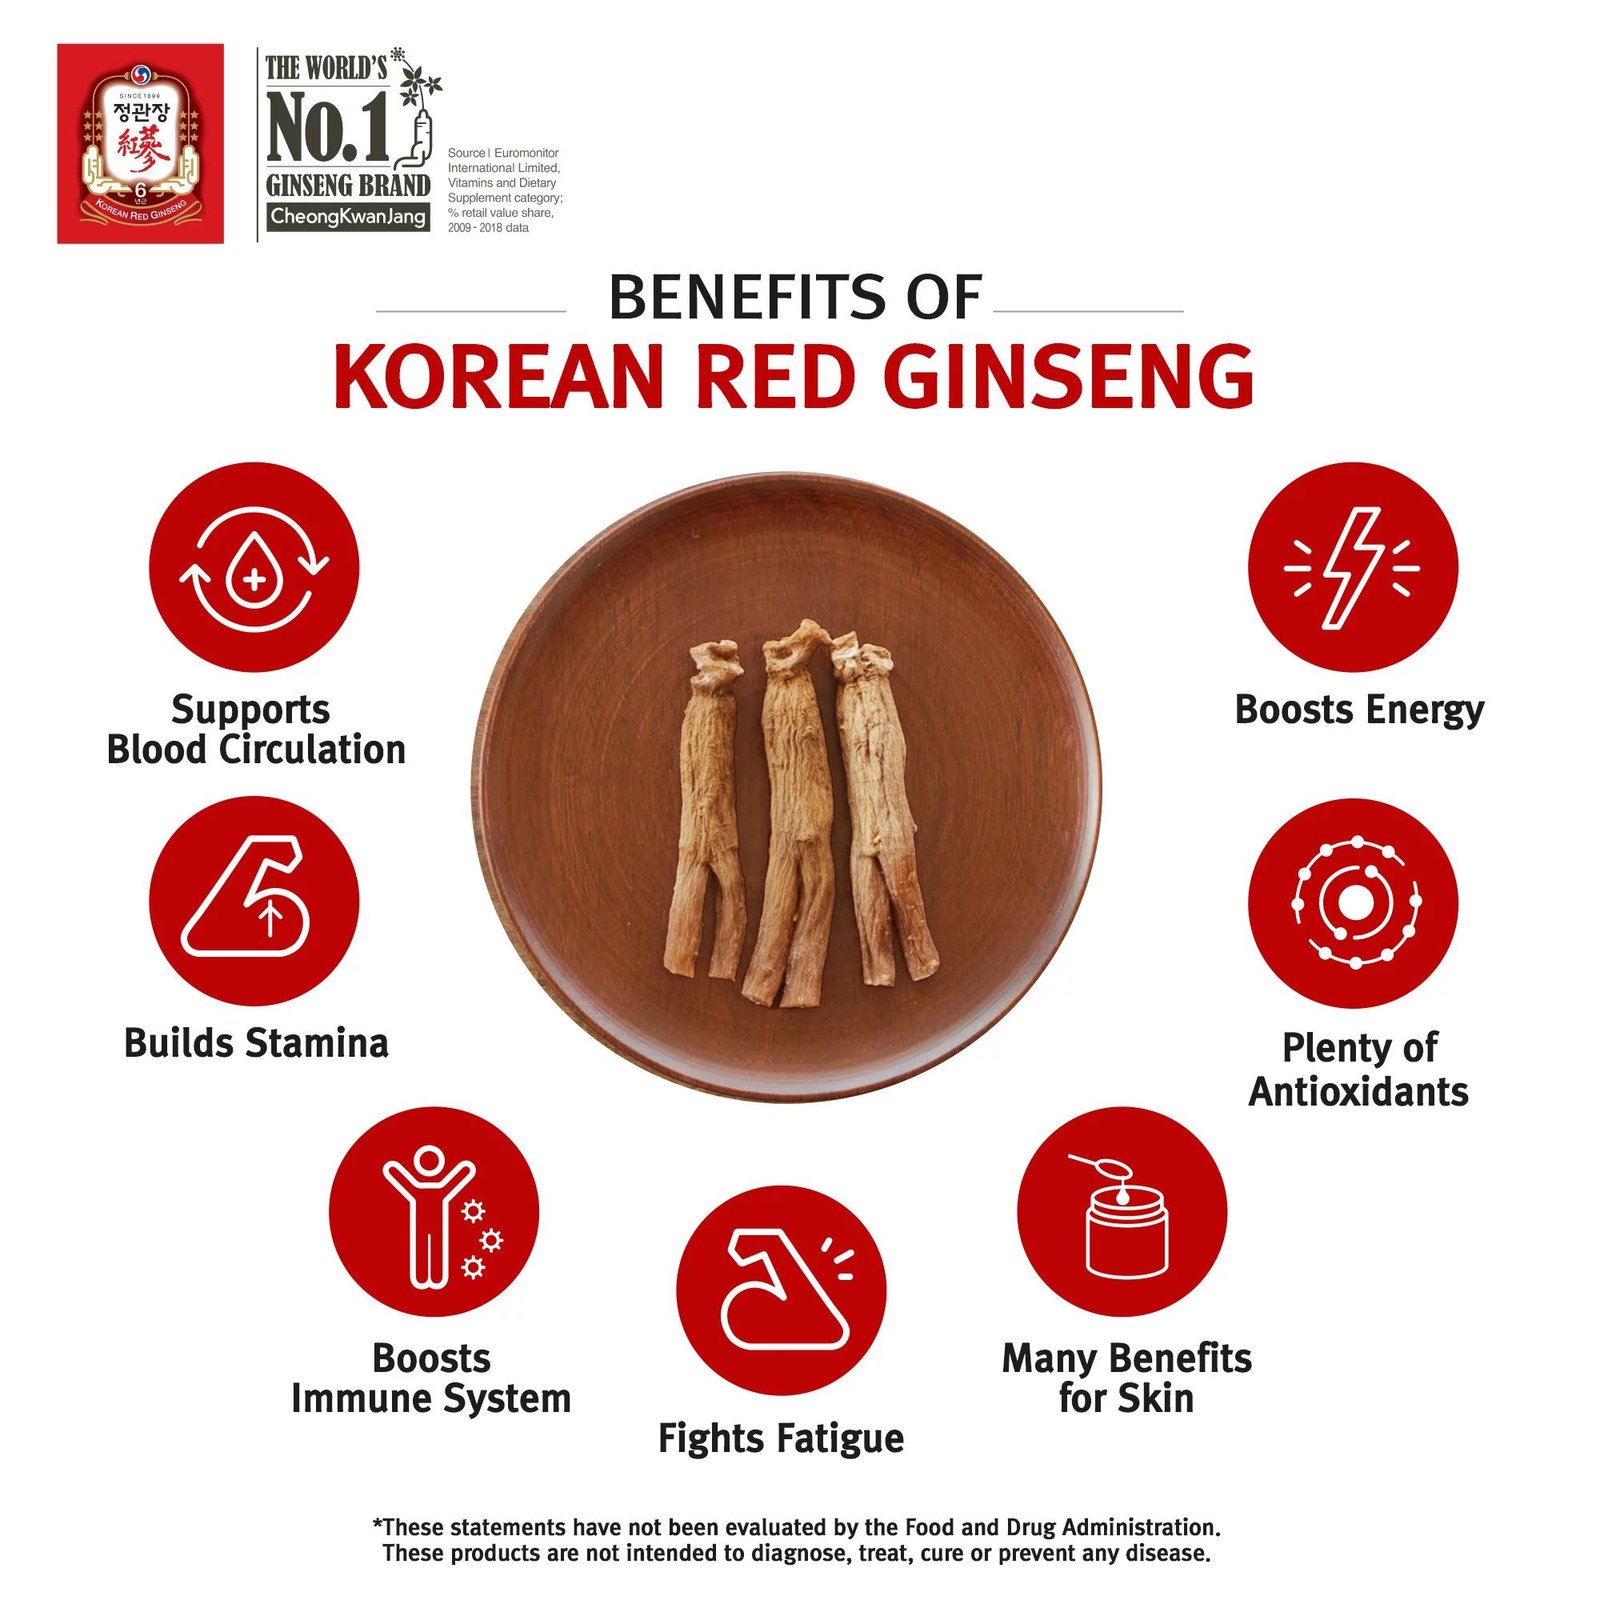 Benefits of Korean Red Ginseng